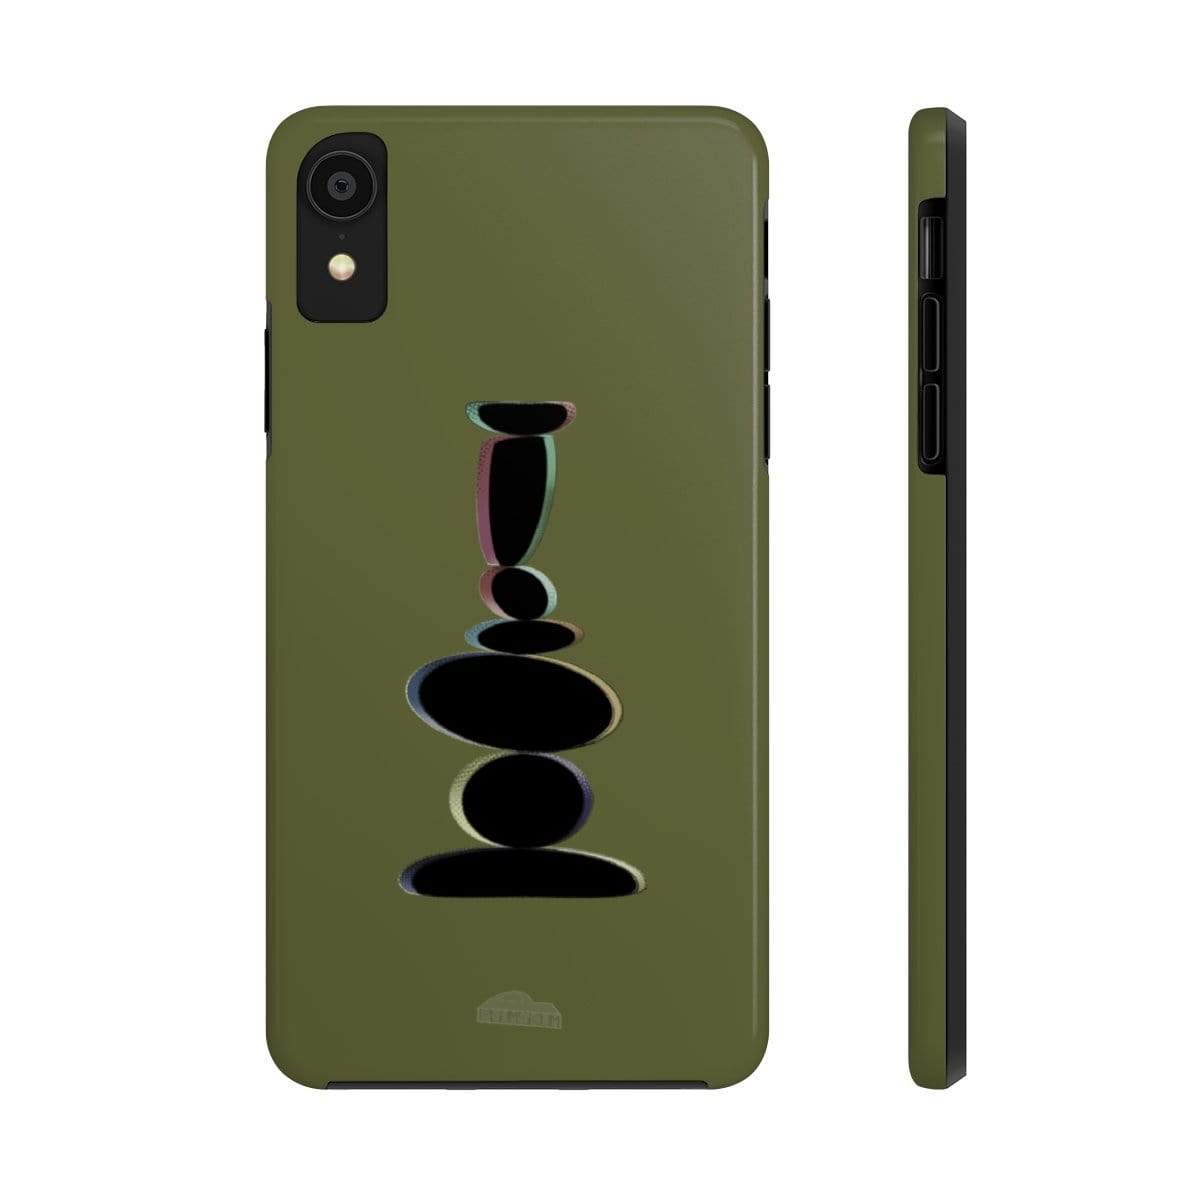 Plumskum Phone Case iPhone XR Plumskum Zen Balanced Stones Artwork Phone Case